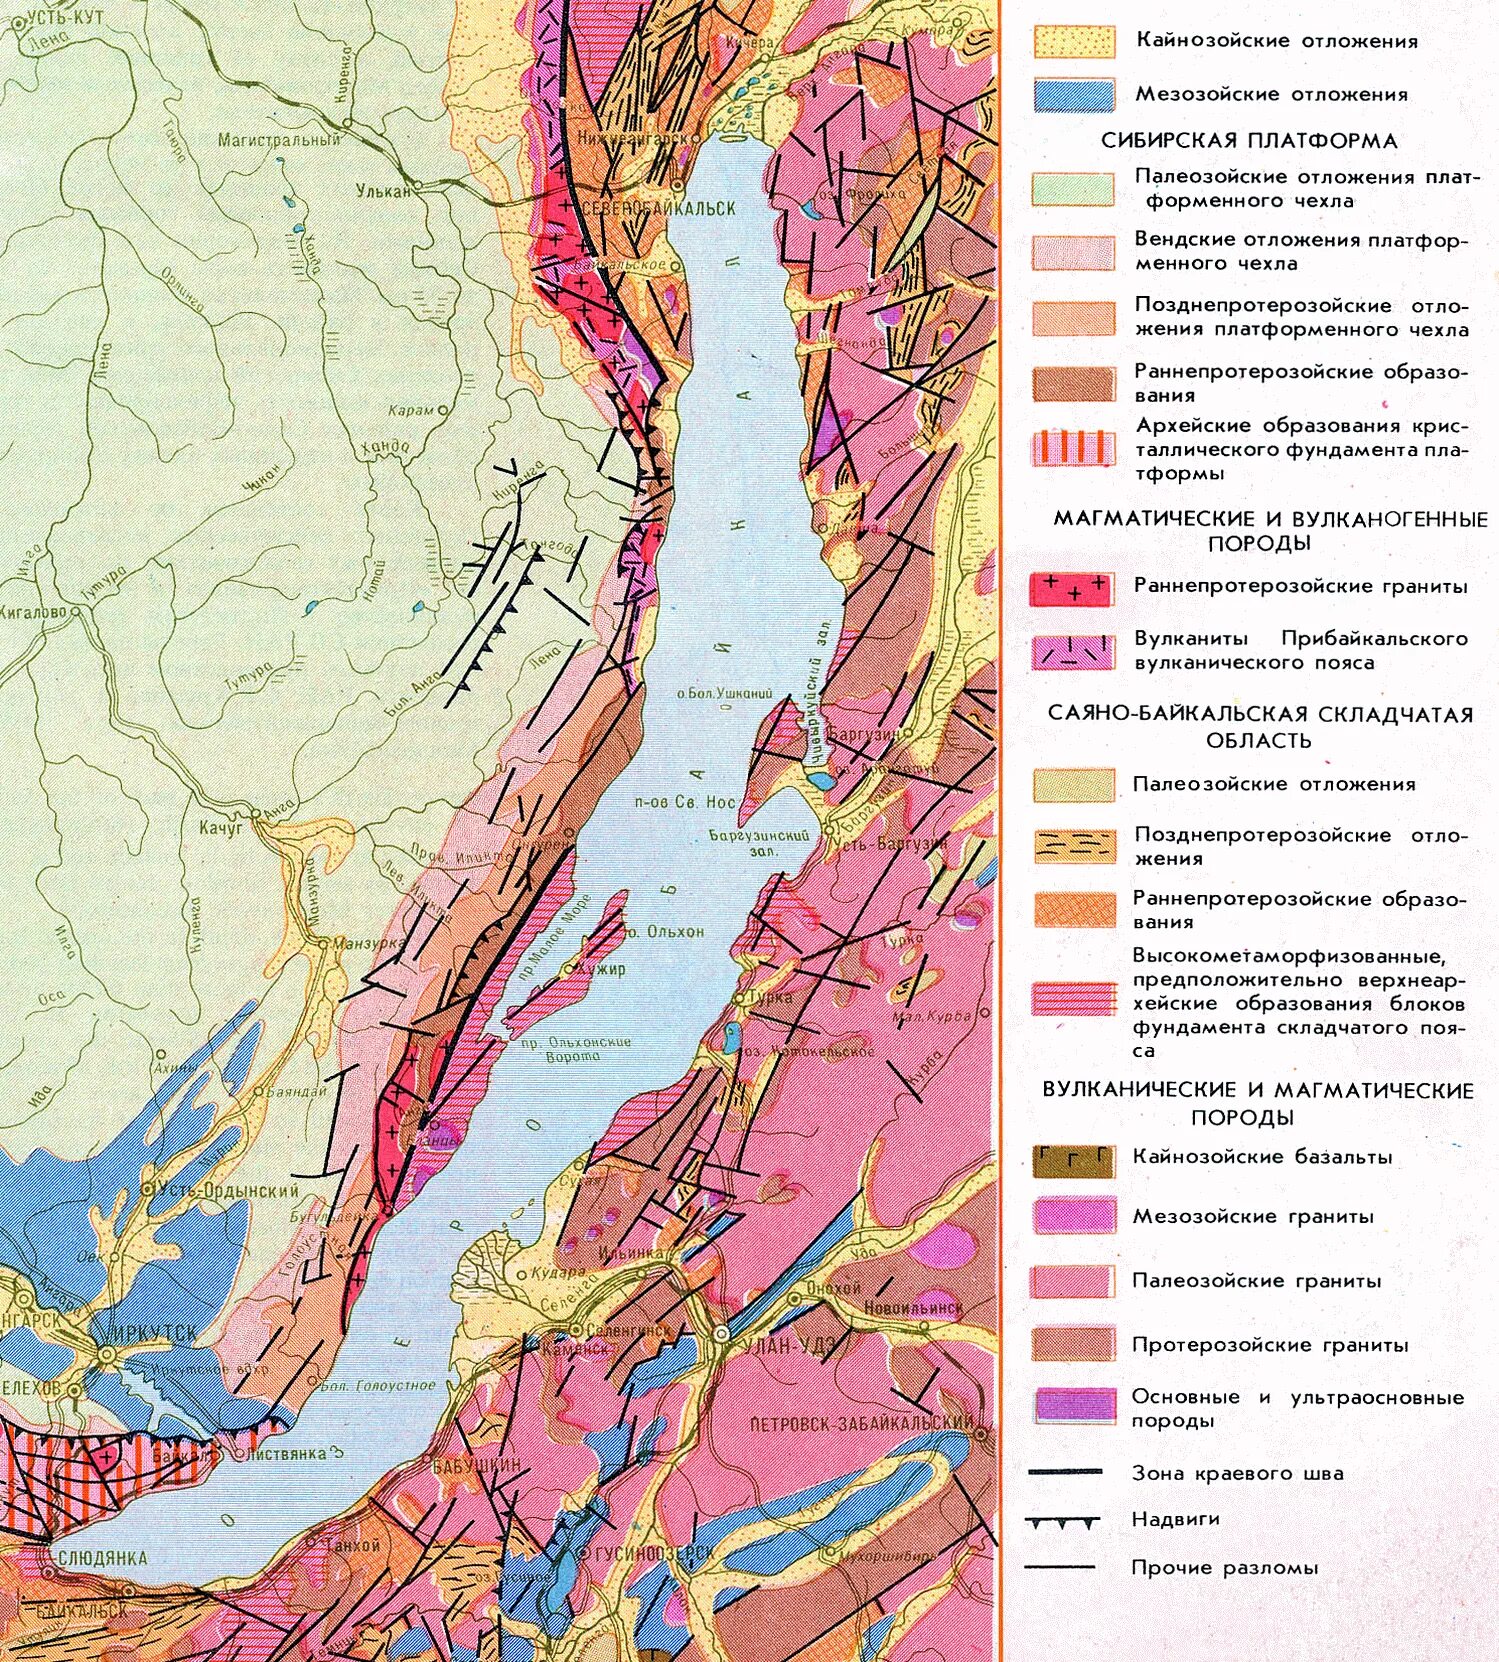 Геологическое восточной сибири. Геологическая карта озера Байкал. Байкальская рифтовая зона Геологическое строение. Тектоническая карта озера Байкал. Геологическое строение озера Байкал.